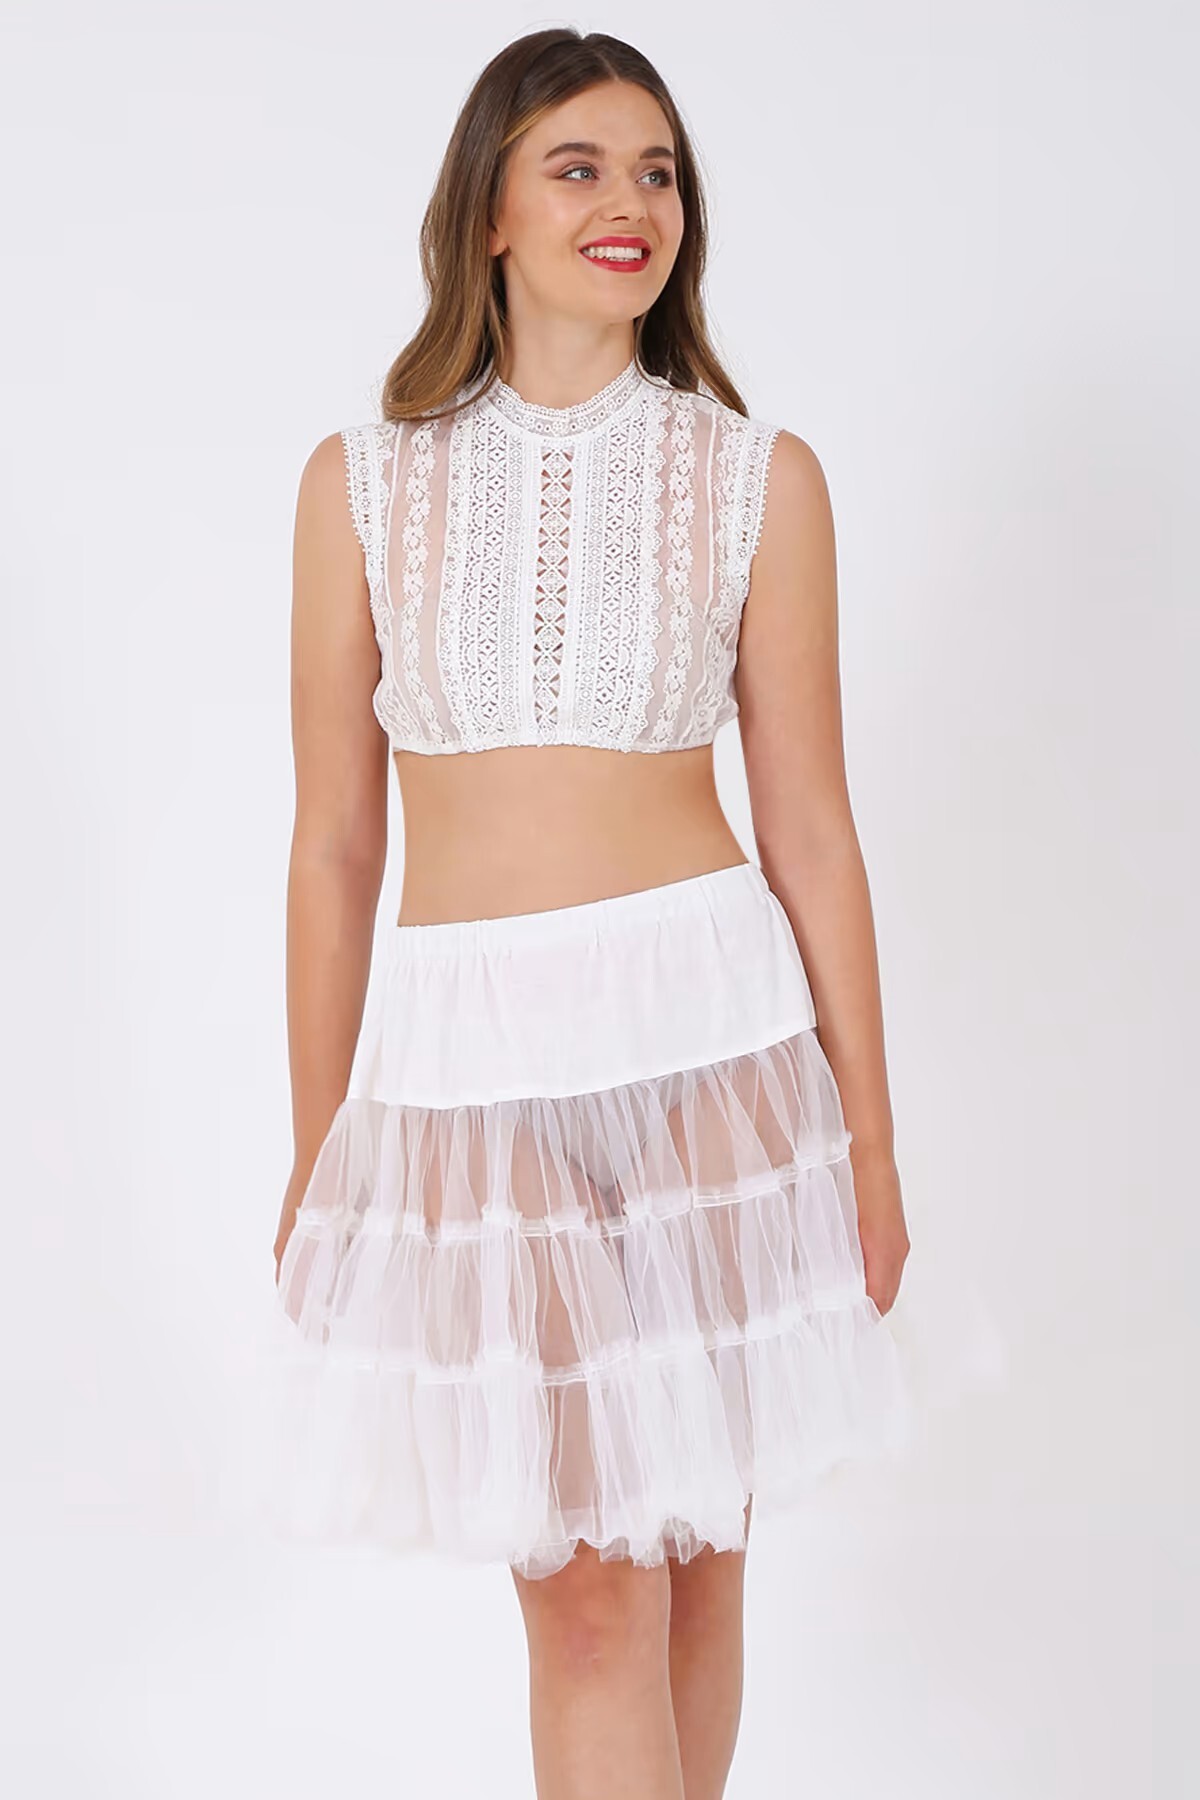 Jong letterlijk Hilarisch Petticoat in witte 50cm | Dirndl.com